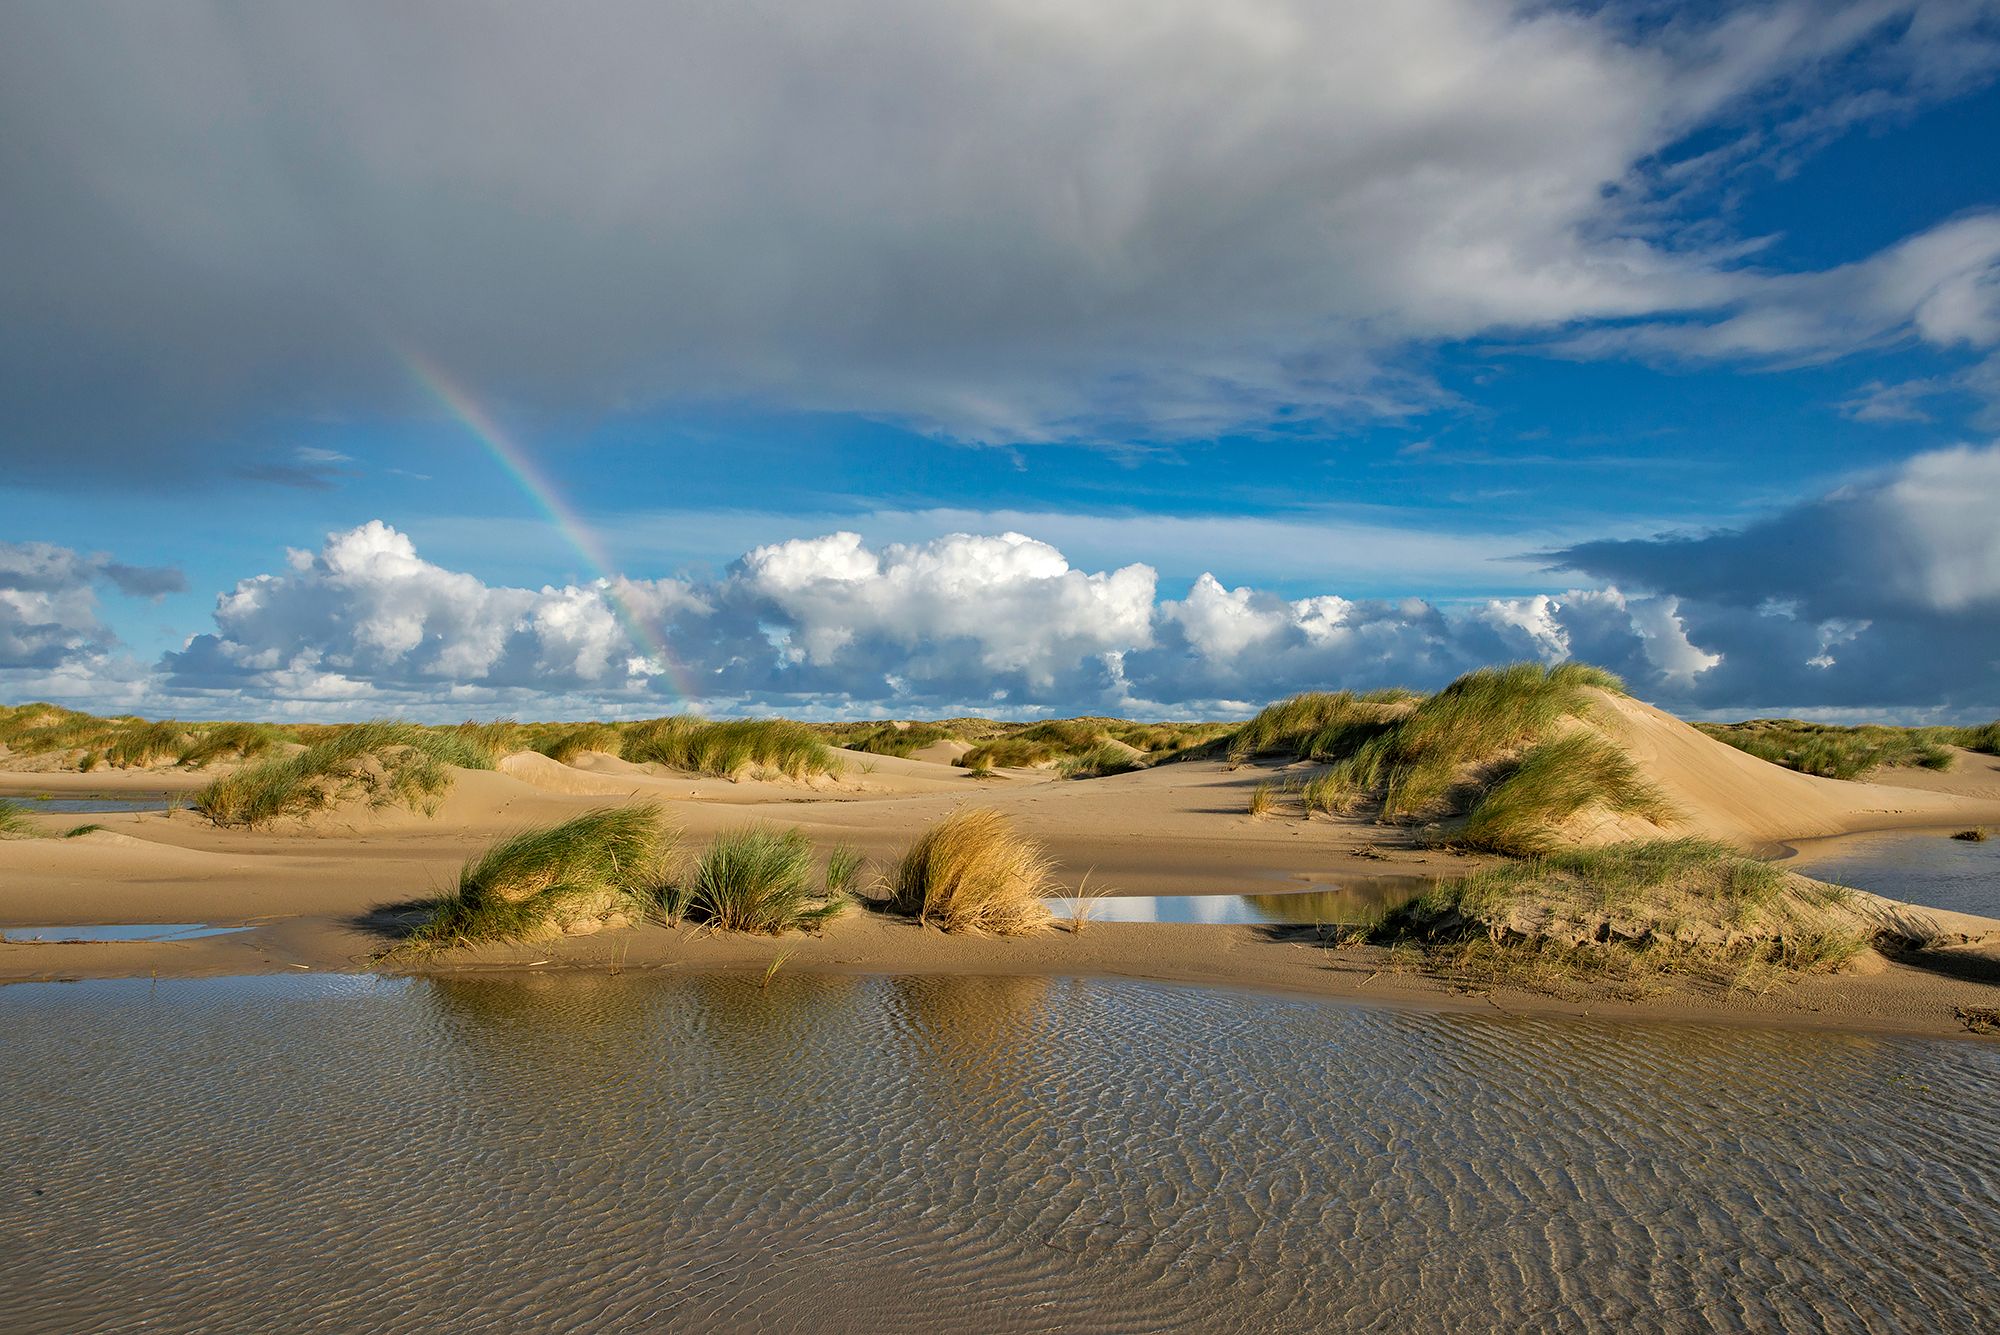 Regenboog boven natte vallei tussen de zeeduinen op de strandvlakte van De Hors op de zuidpunt van Waddeneiland Texel.